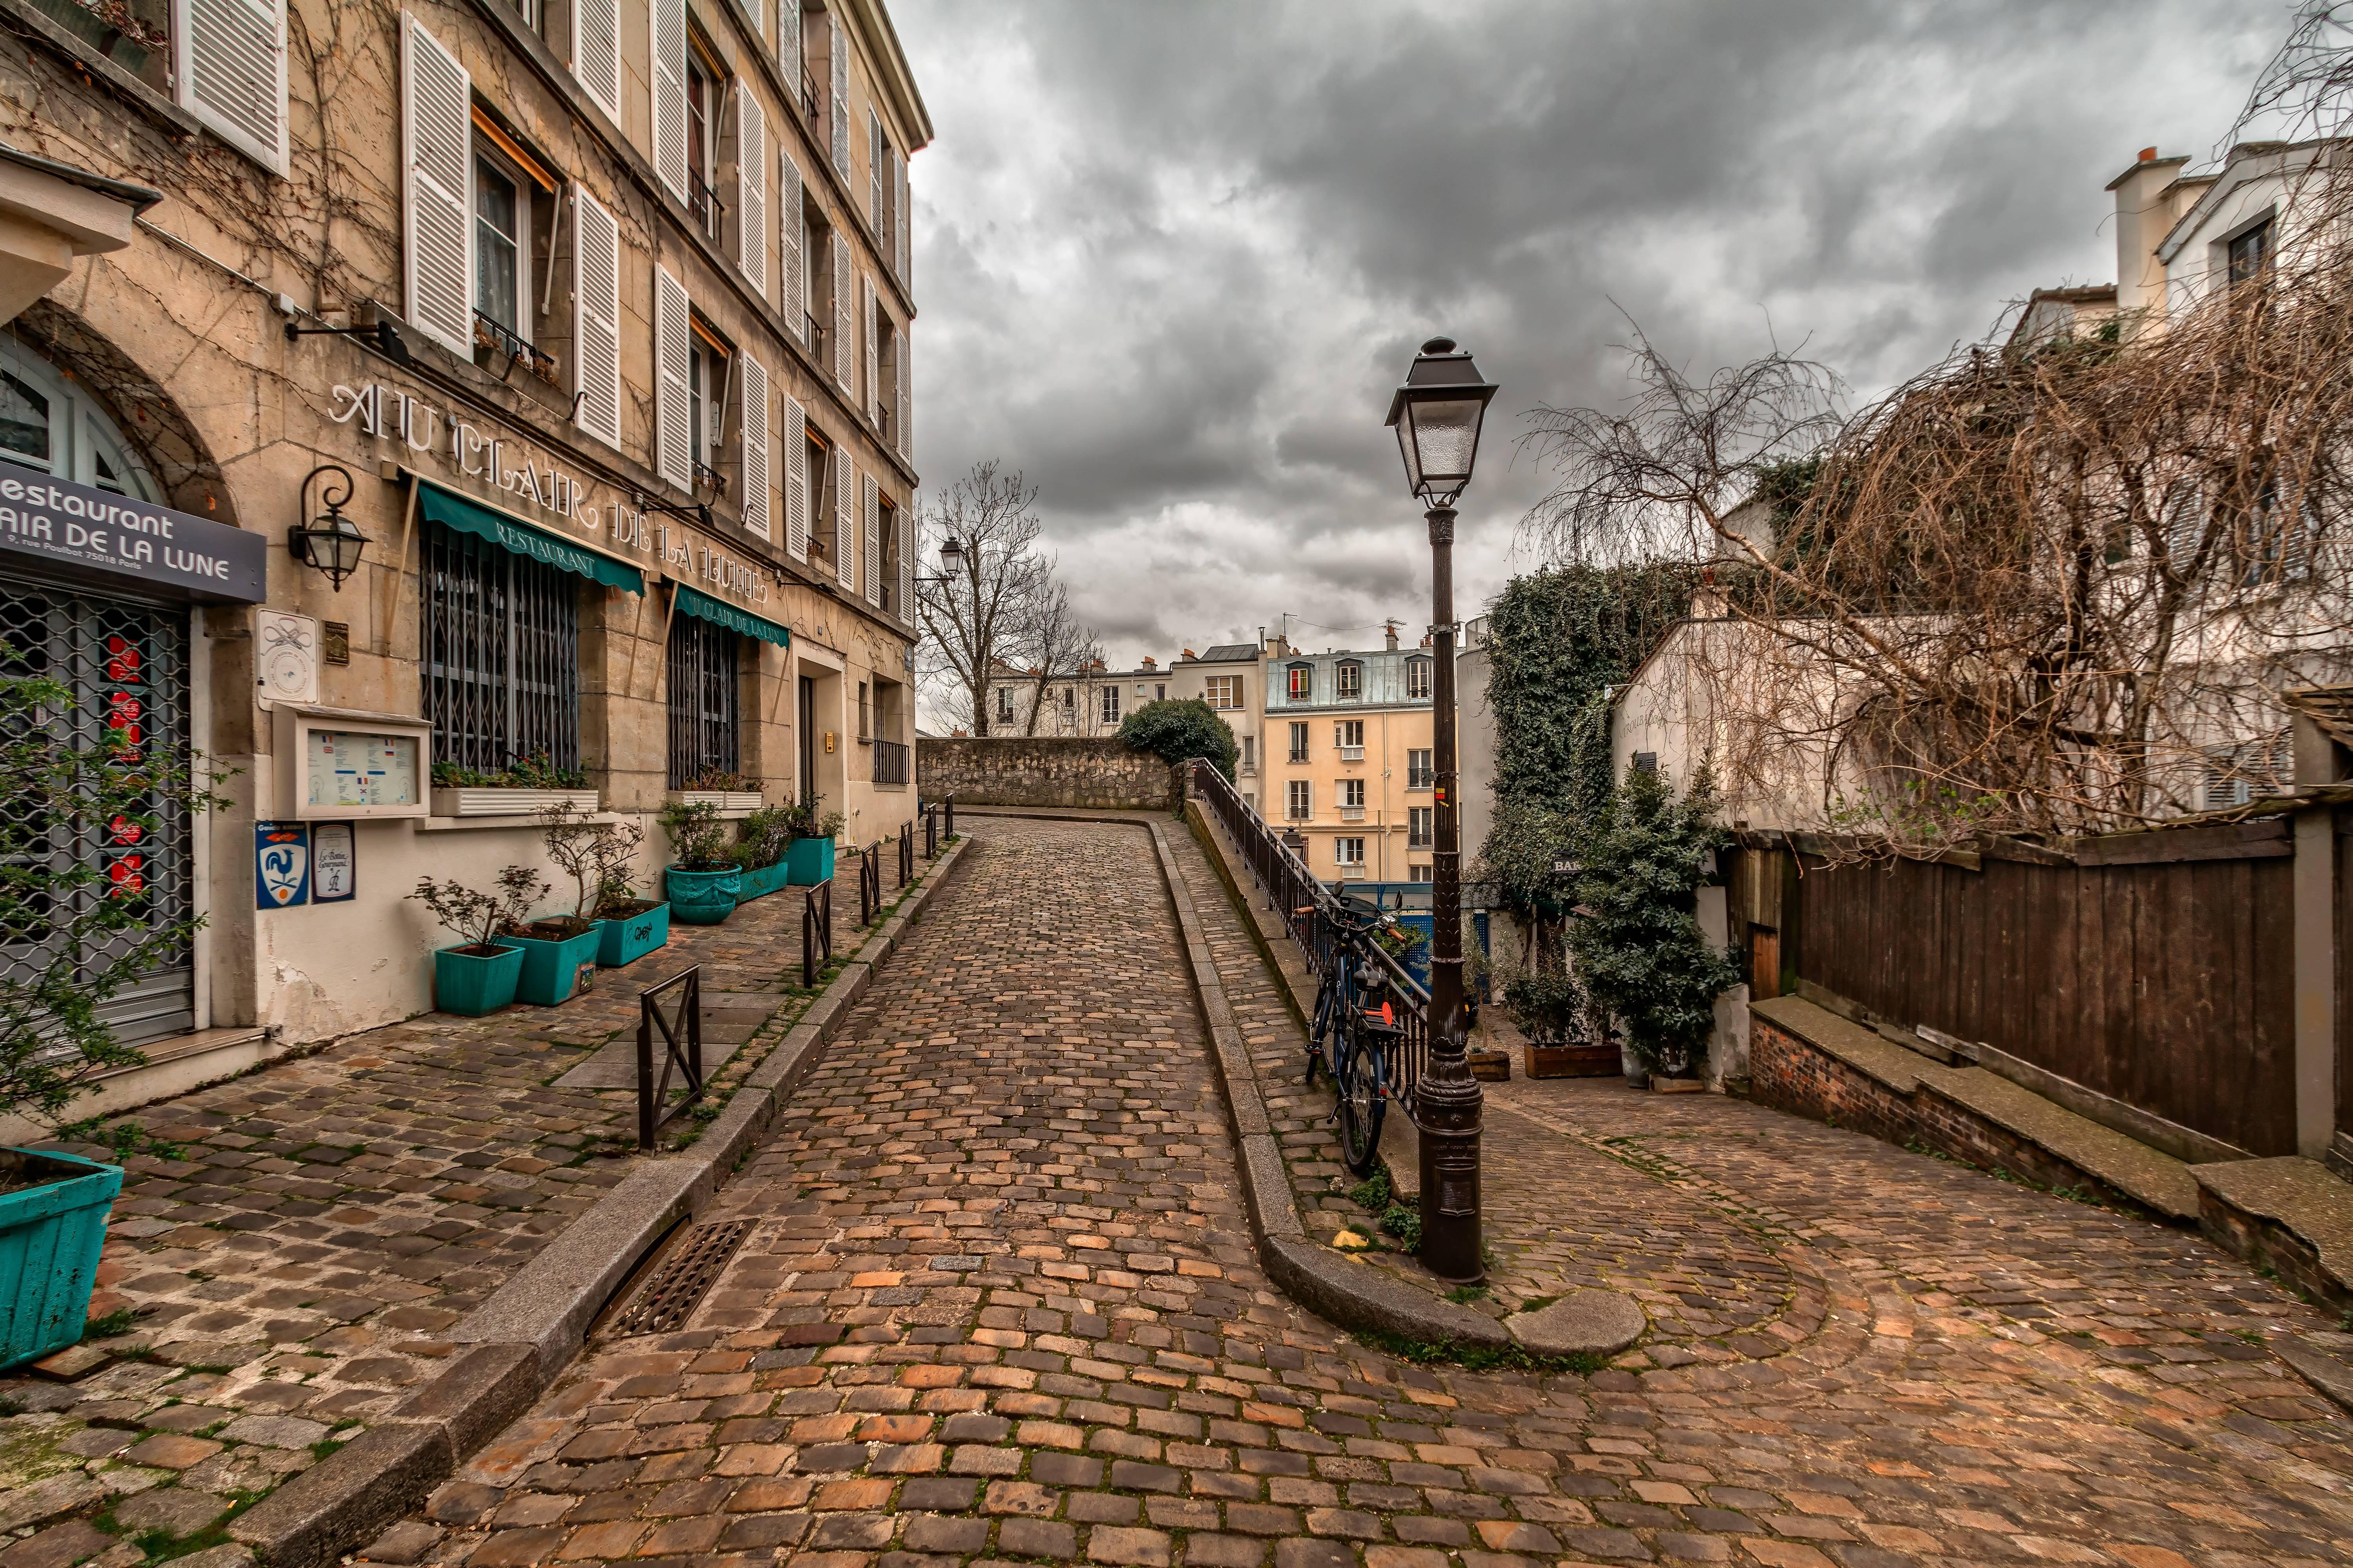 4600039 path street pavement old paris montmartre town